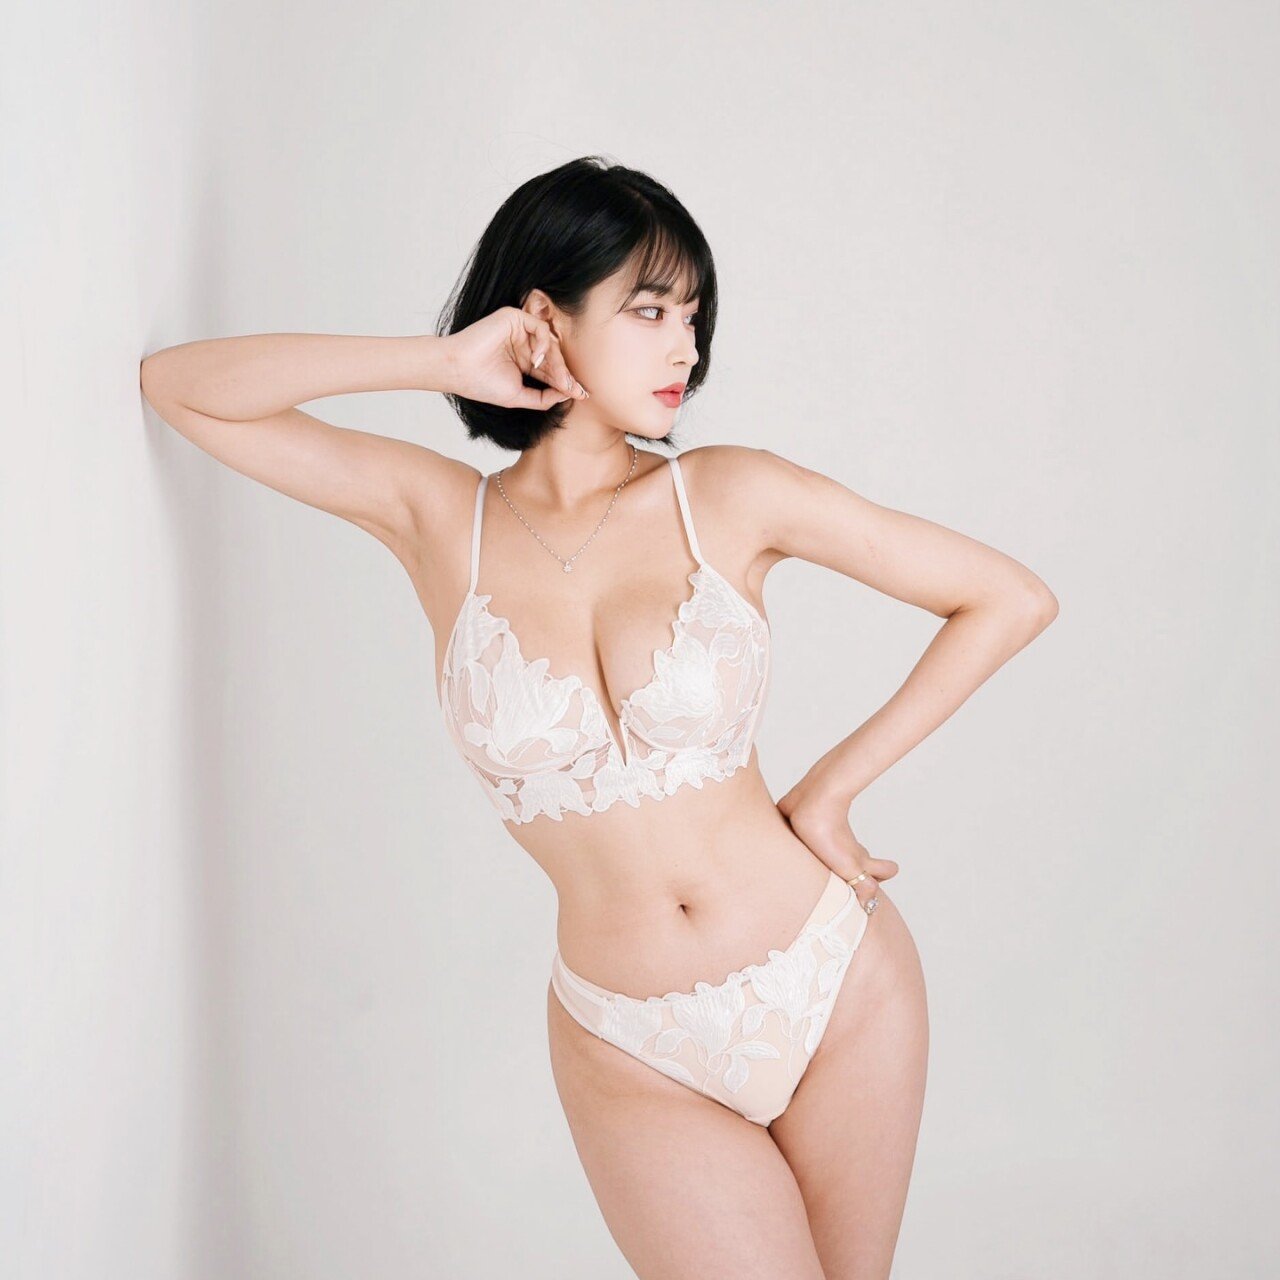 김갑주 하얀 레이스 브라팬티 가슴골 엄청난 몸매 - 인스타